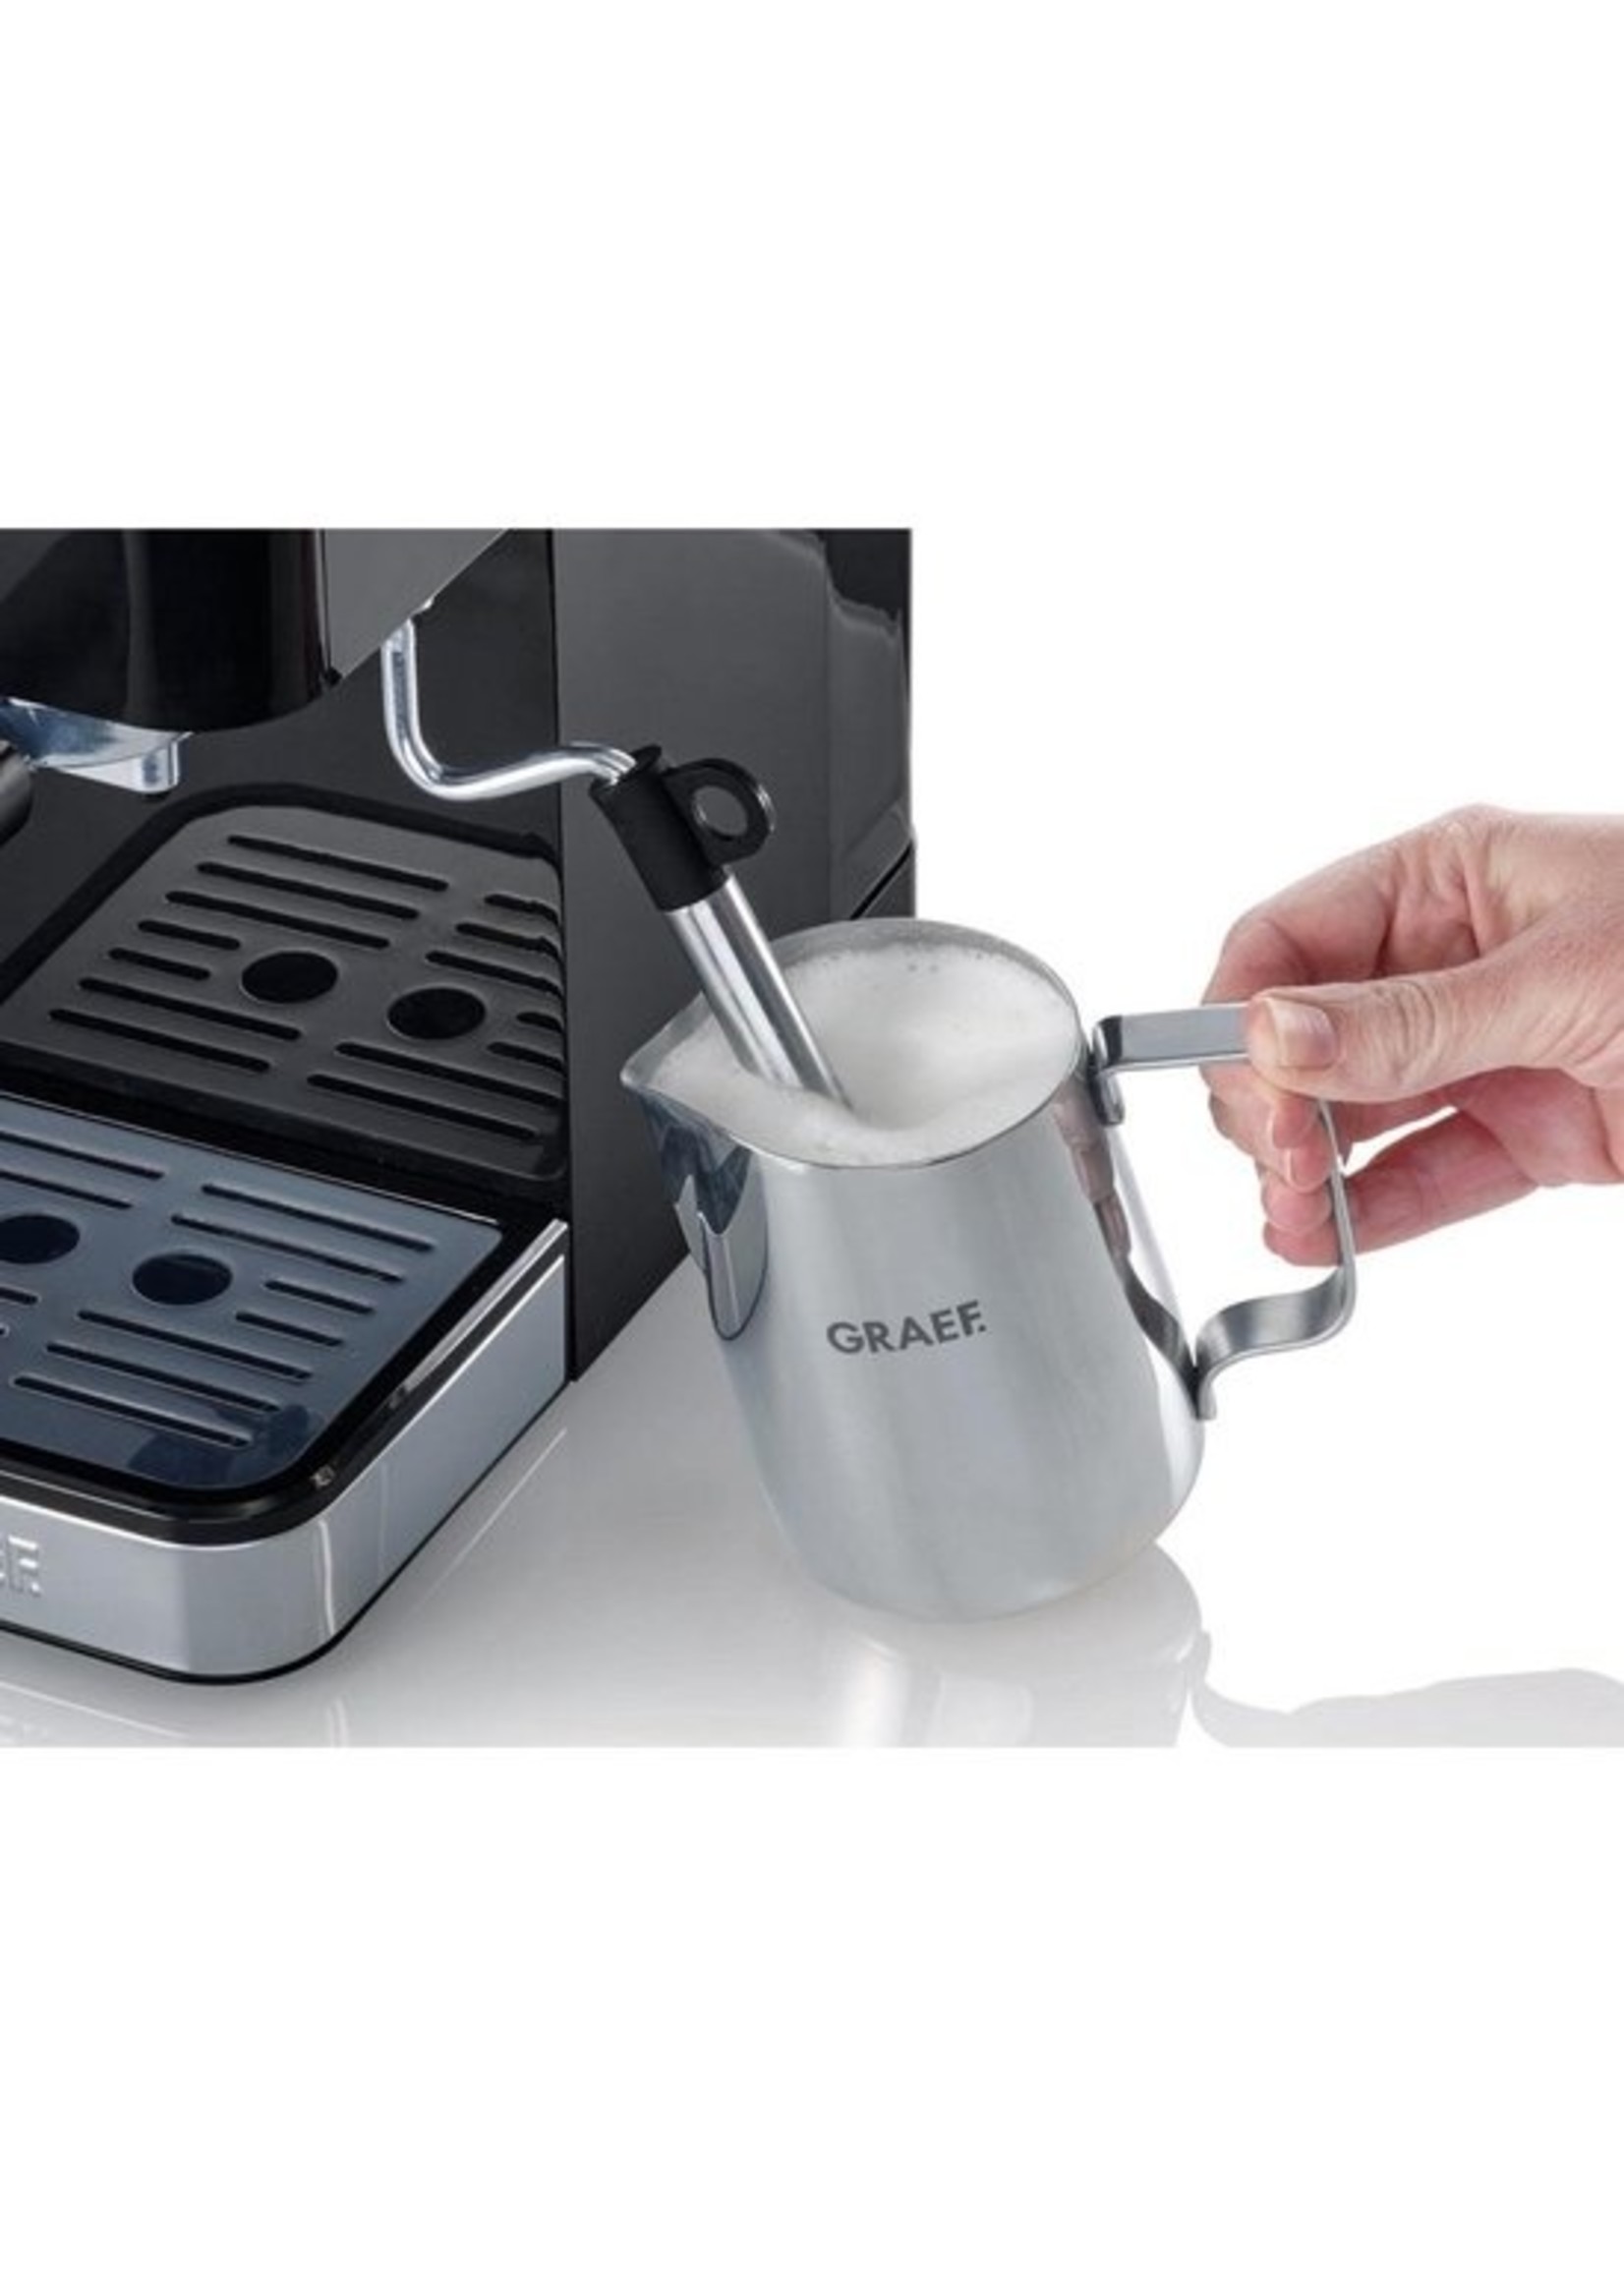 Graef Graef Espresso piston machine ES402 compact 14 cm breed 1400 Watt koopjeshoek